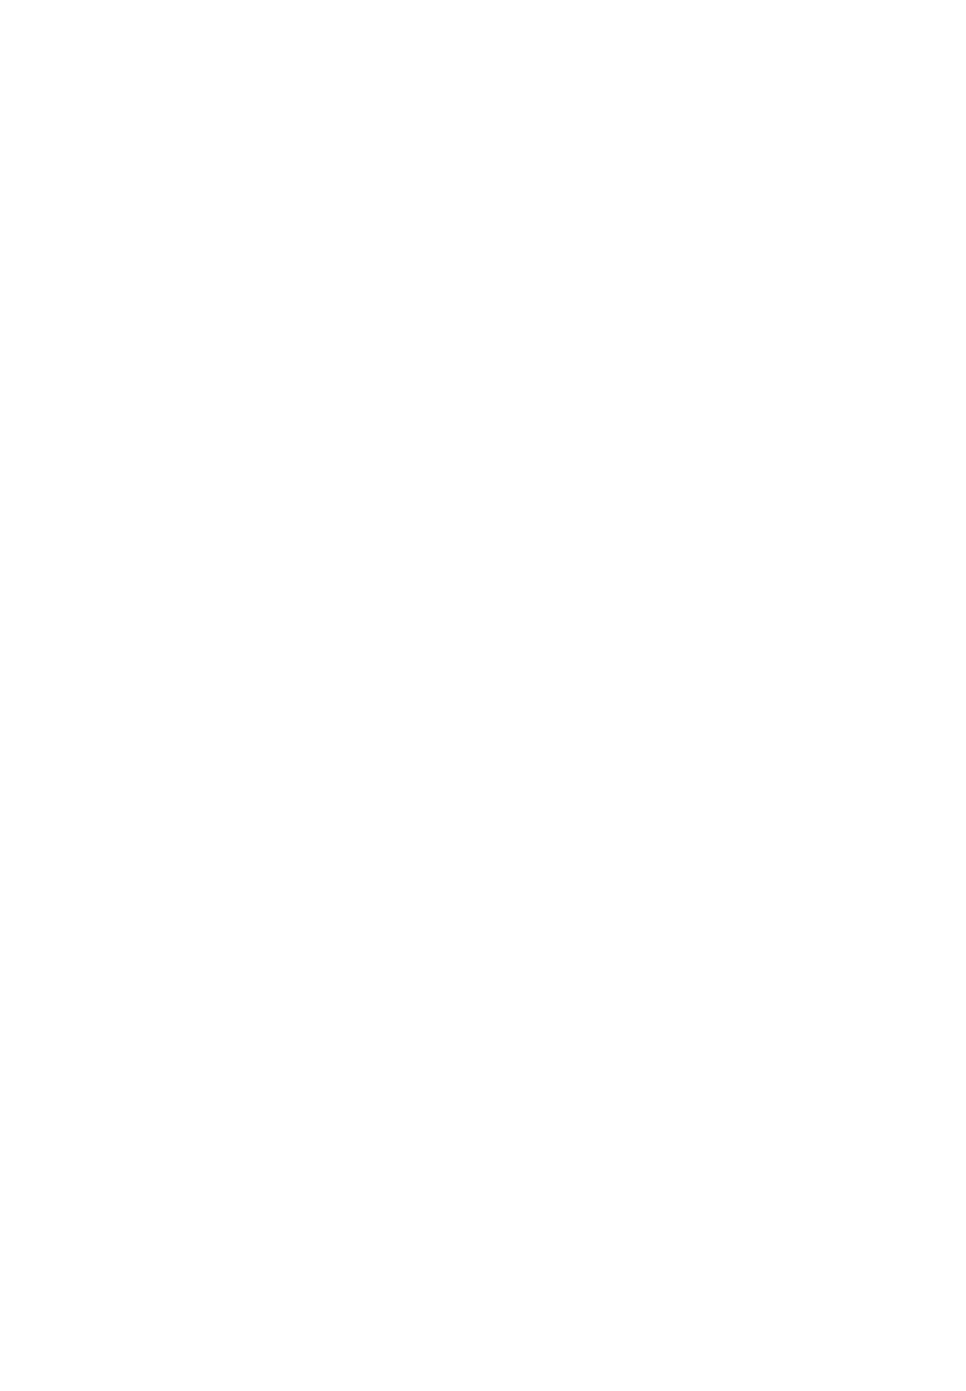 As tourlaville logo